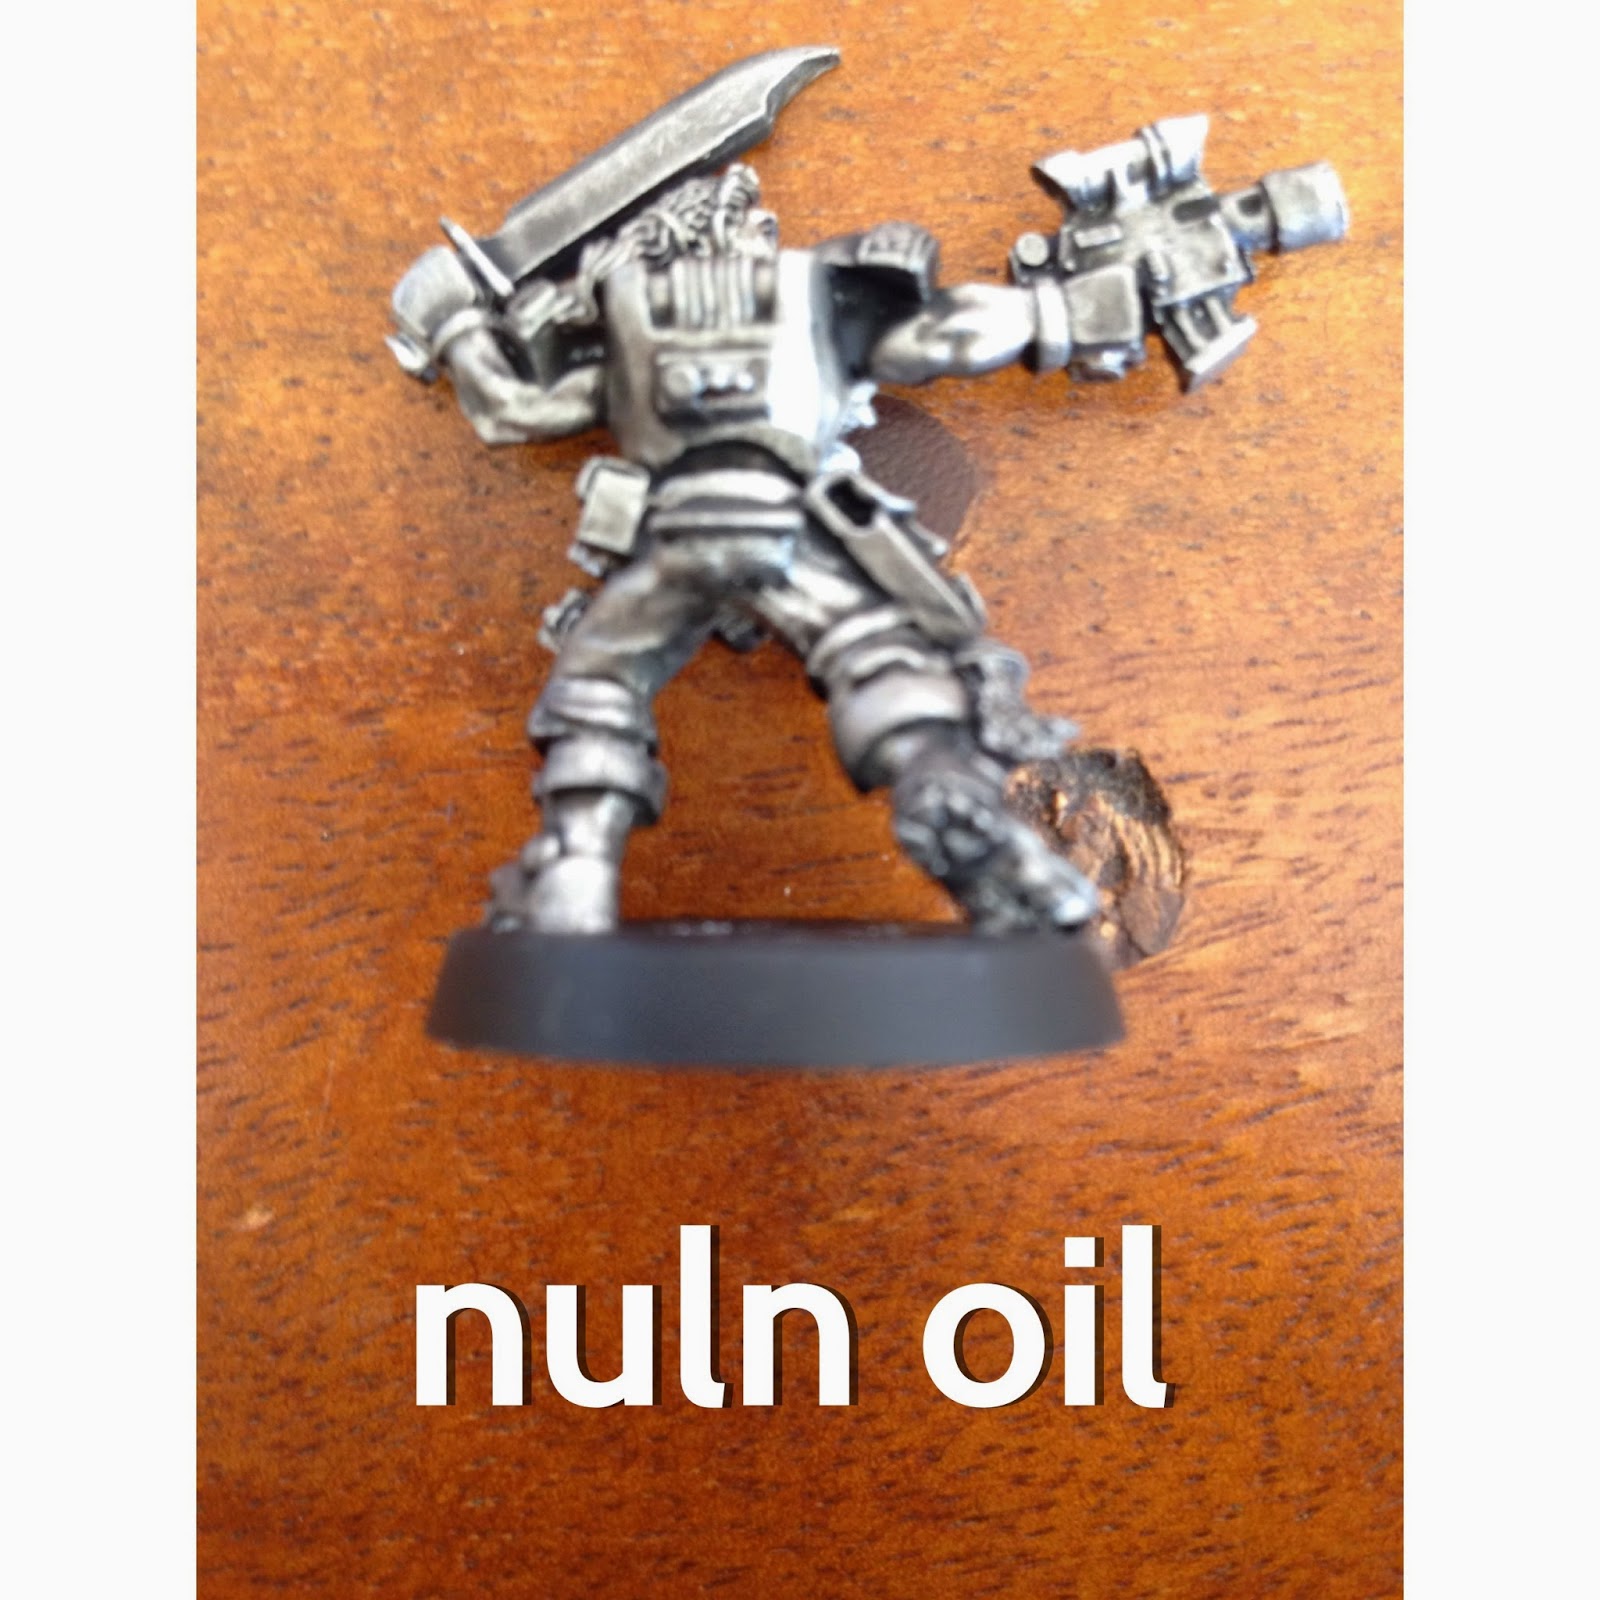 Comparison for Nuln Oil